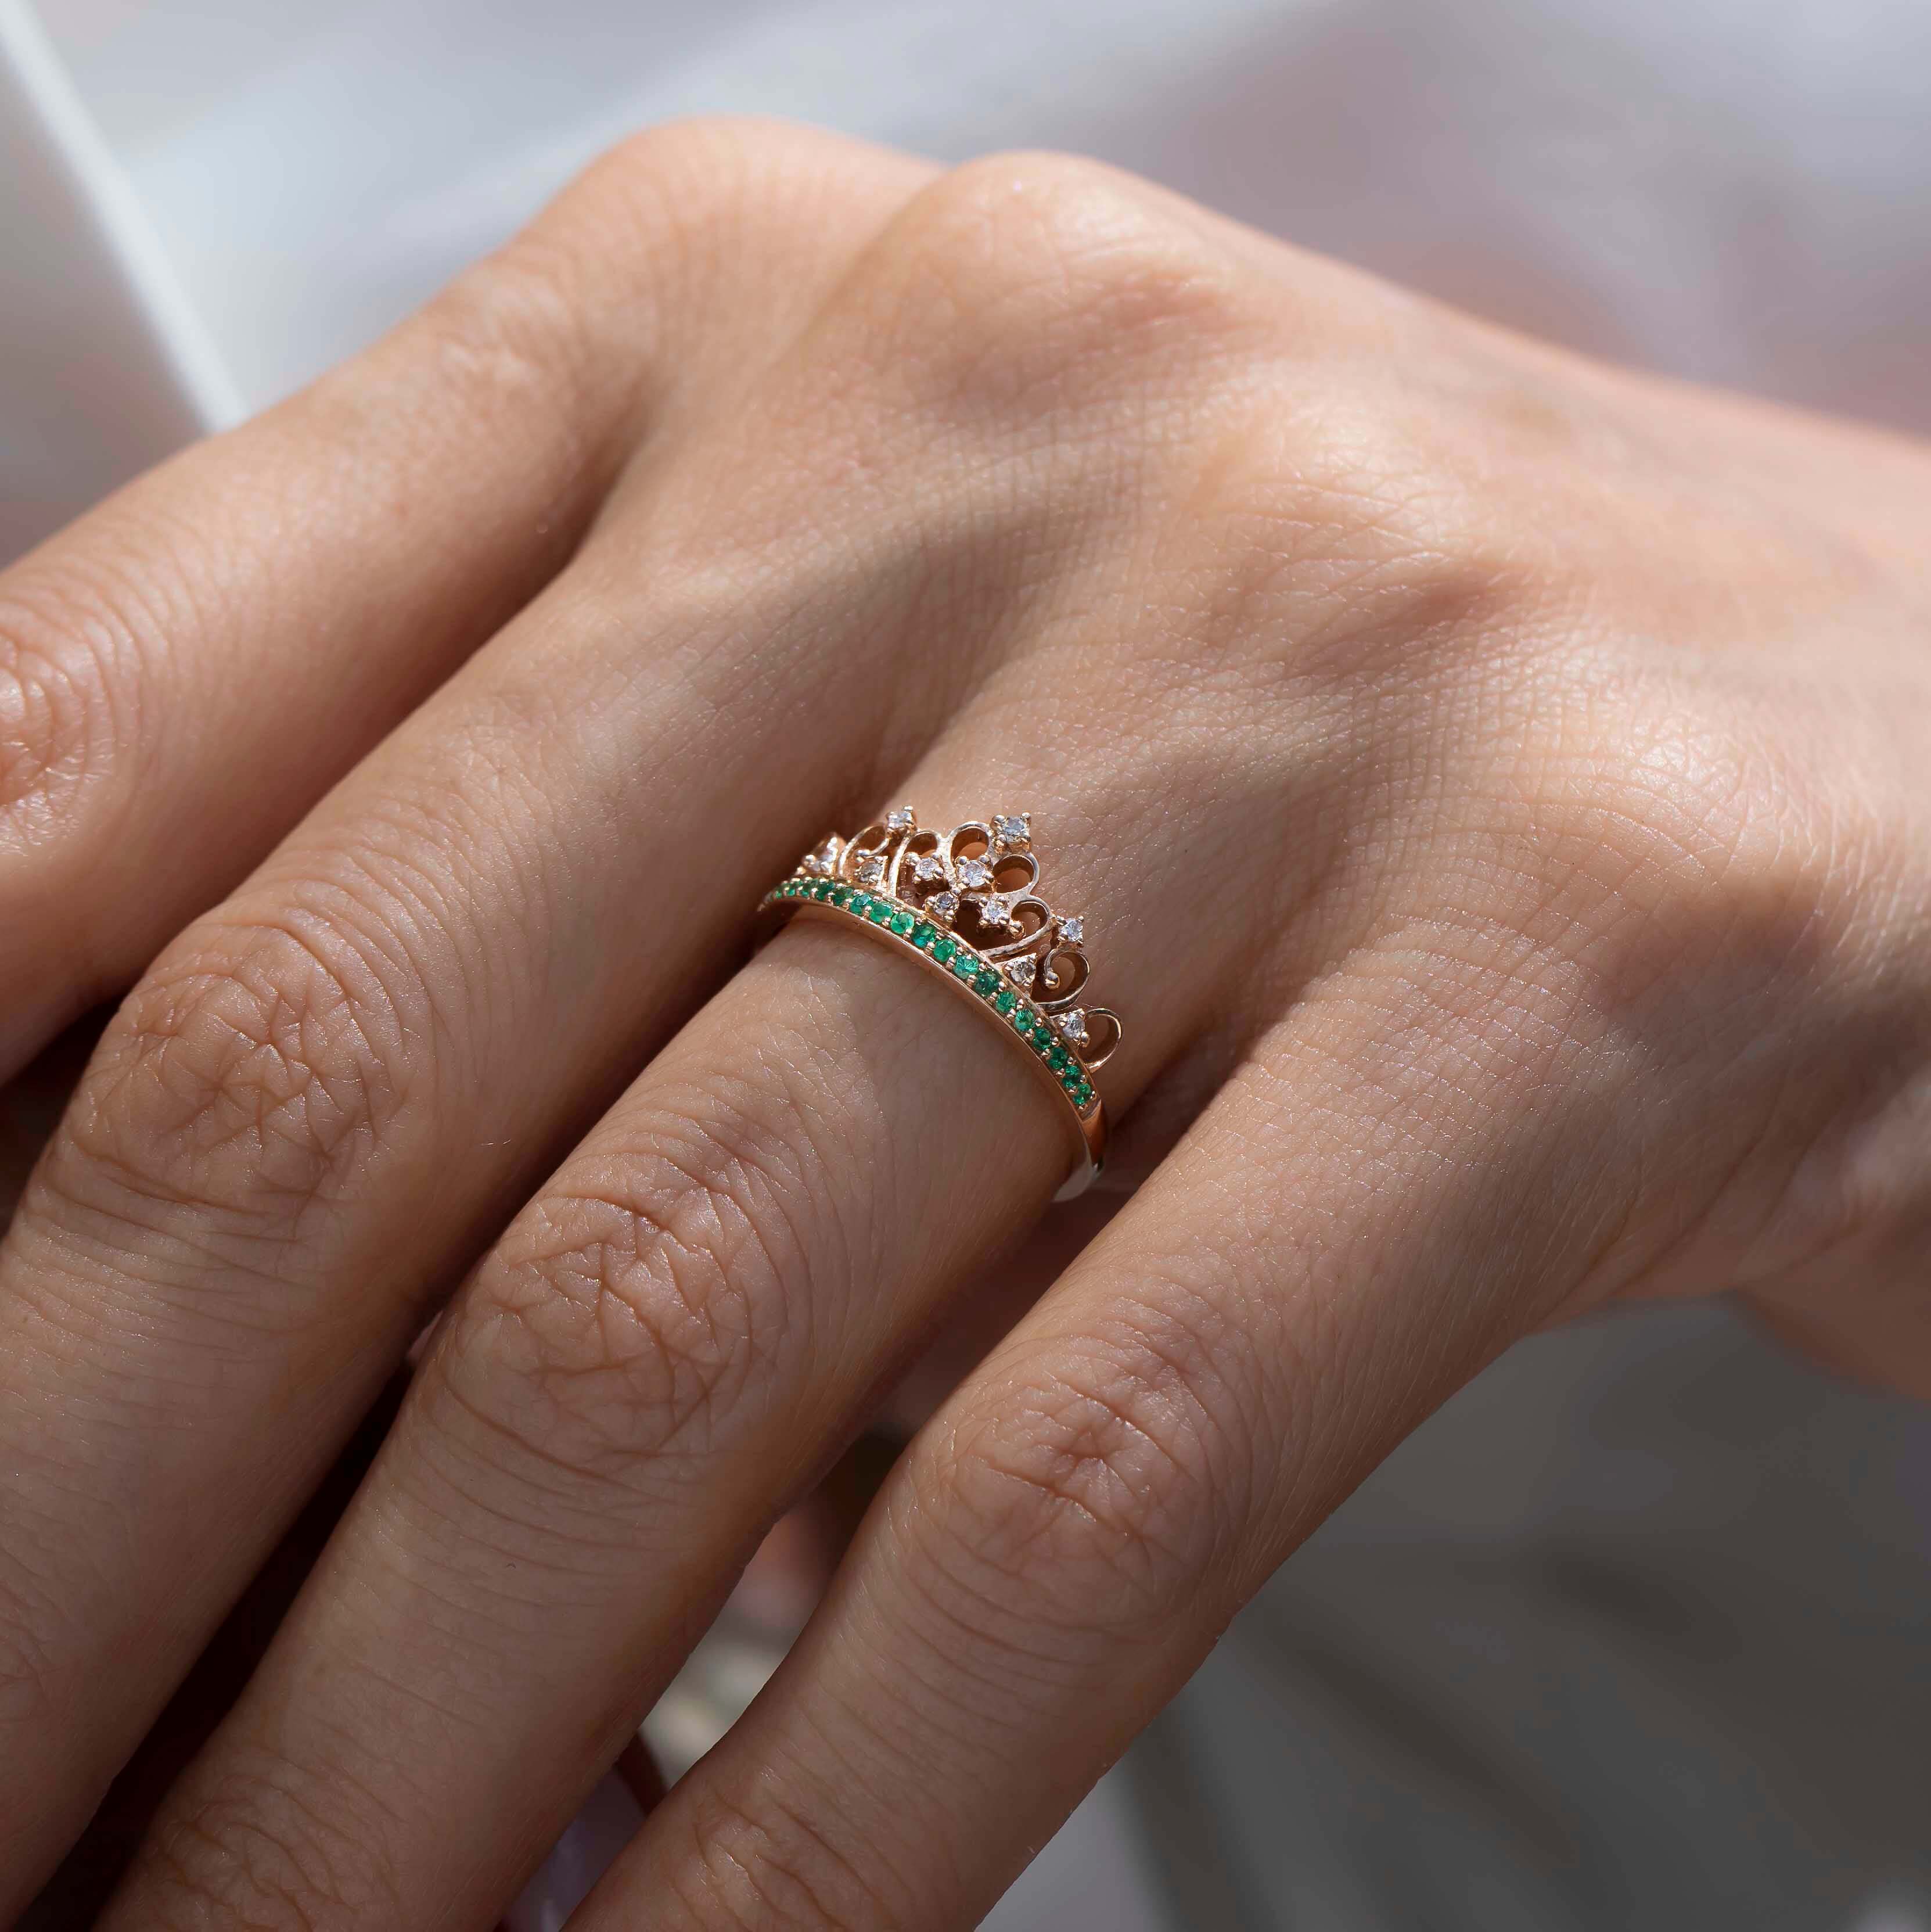 asimetrik dizilmiş pırlantalar ve sıralı dizilmiş zümrüt taşlarıyla tasarlanmış özel vintage tasarım taç yüzüğün kadın modelin parmağındaki görüntüsü